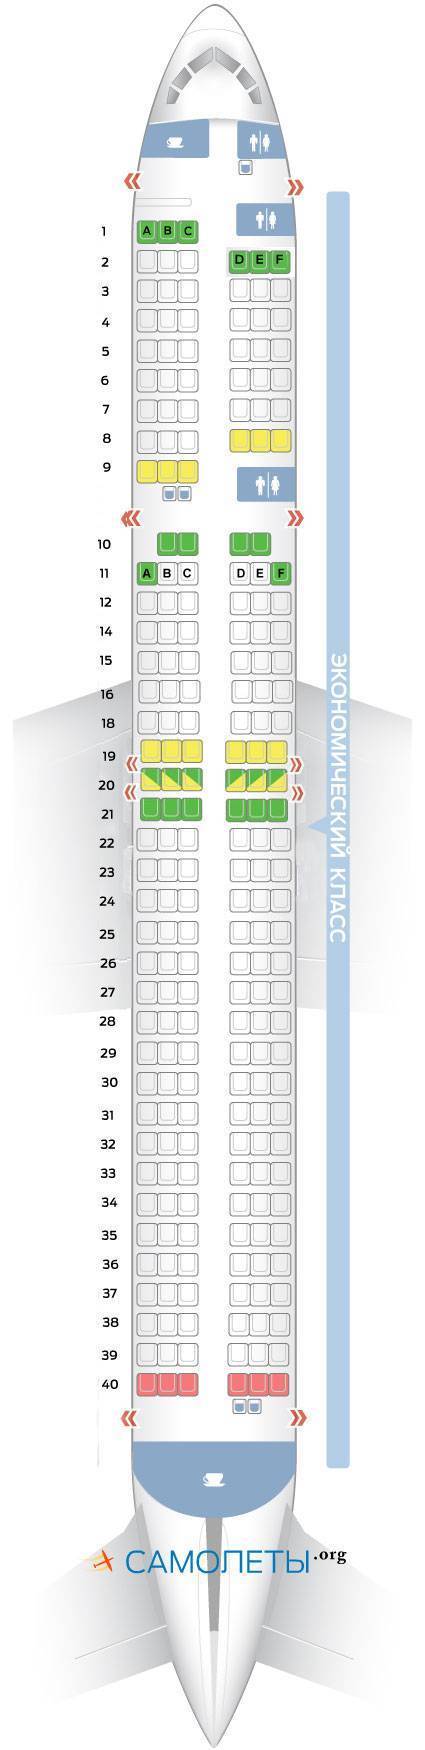 Боинг 777-300: схема и лучшие места. бизнес-, комфорт- и эконом-класс «аэрофлота», «россии», nordwind, emirates